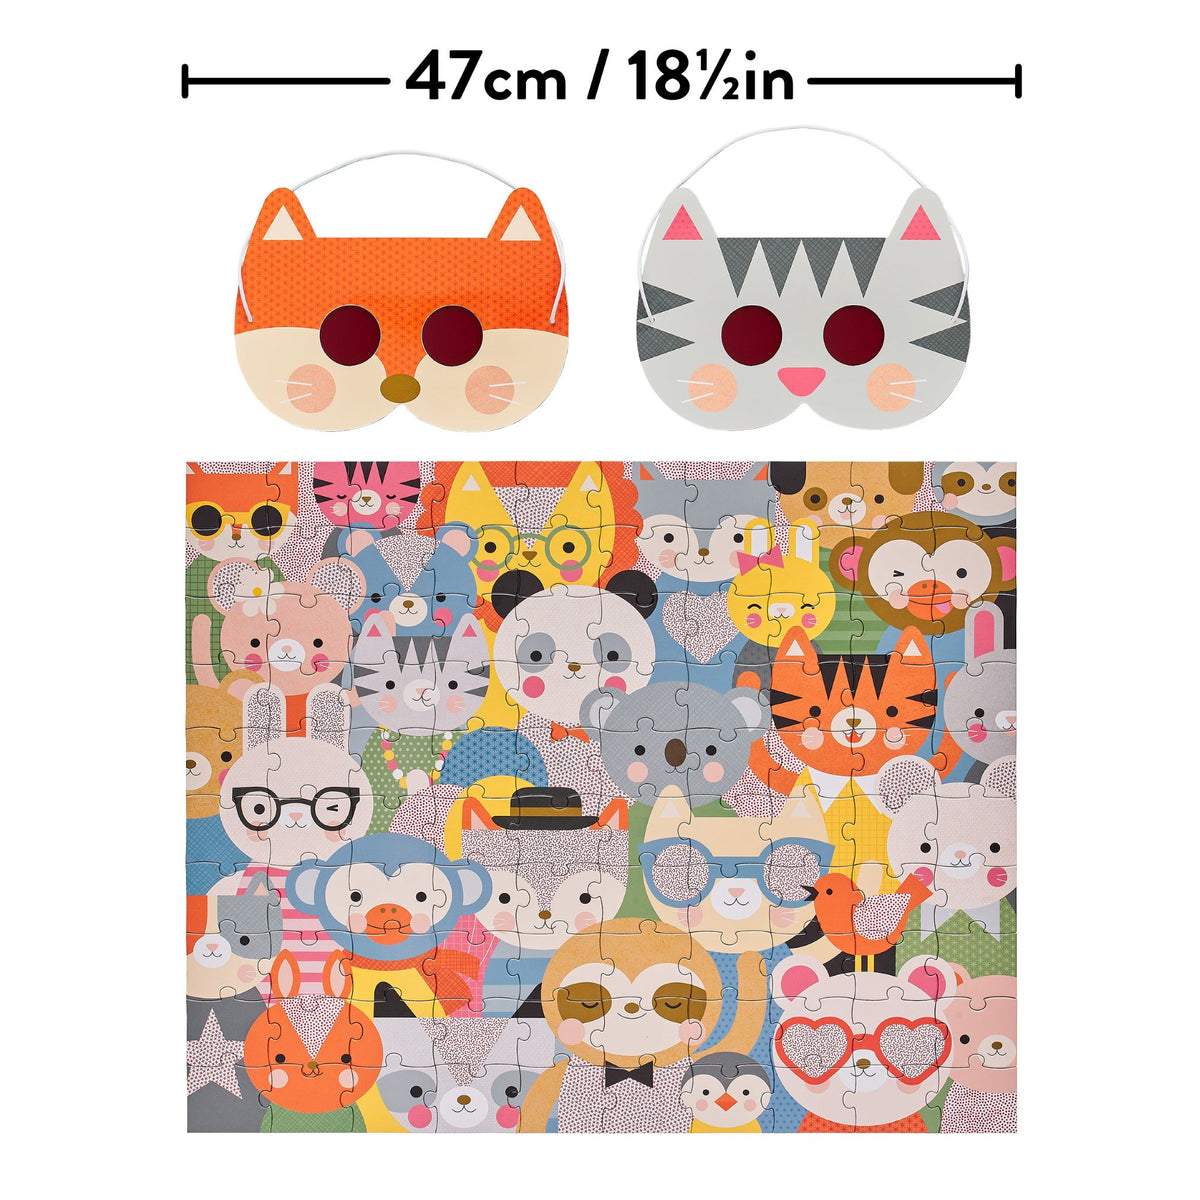 Petit Collage Animal Festival Decoder Puzzle